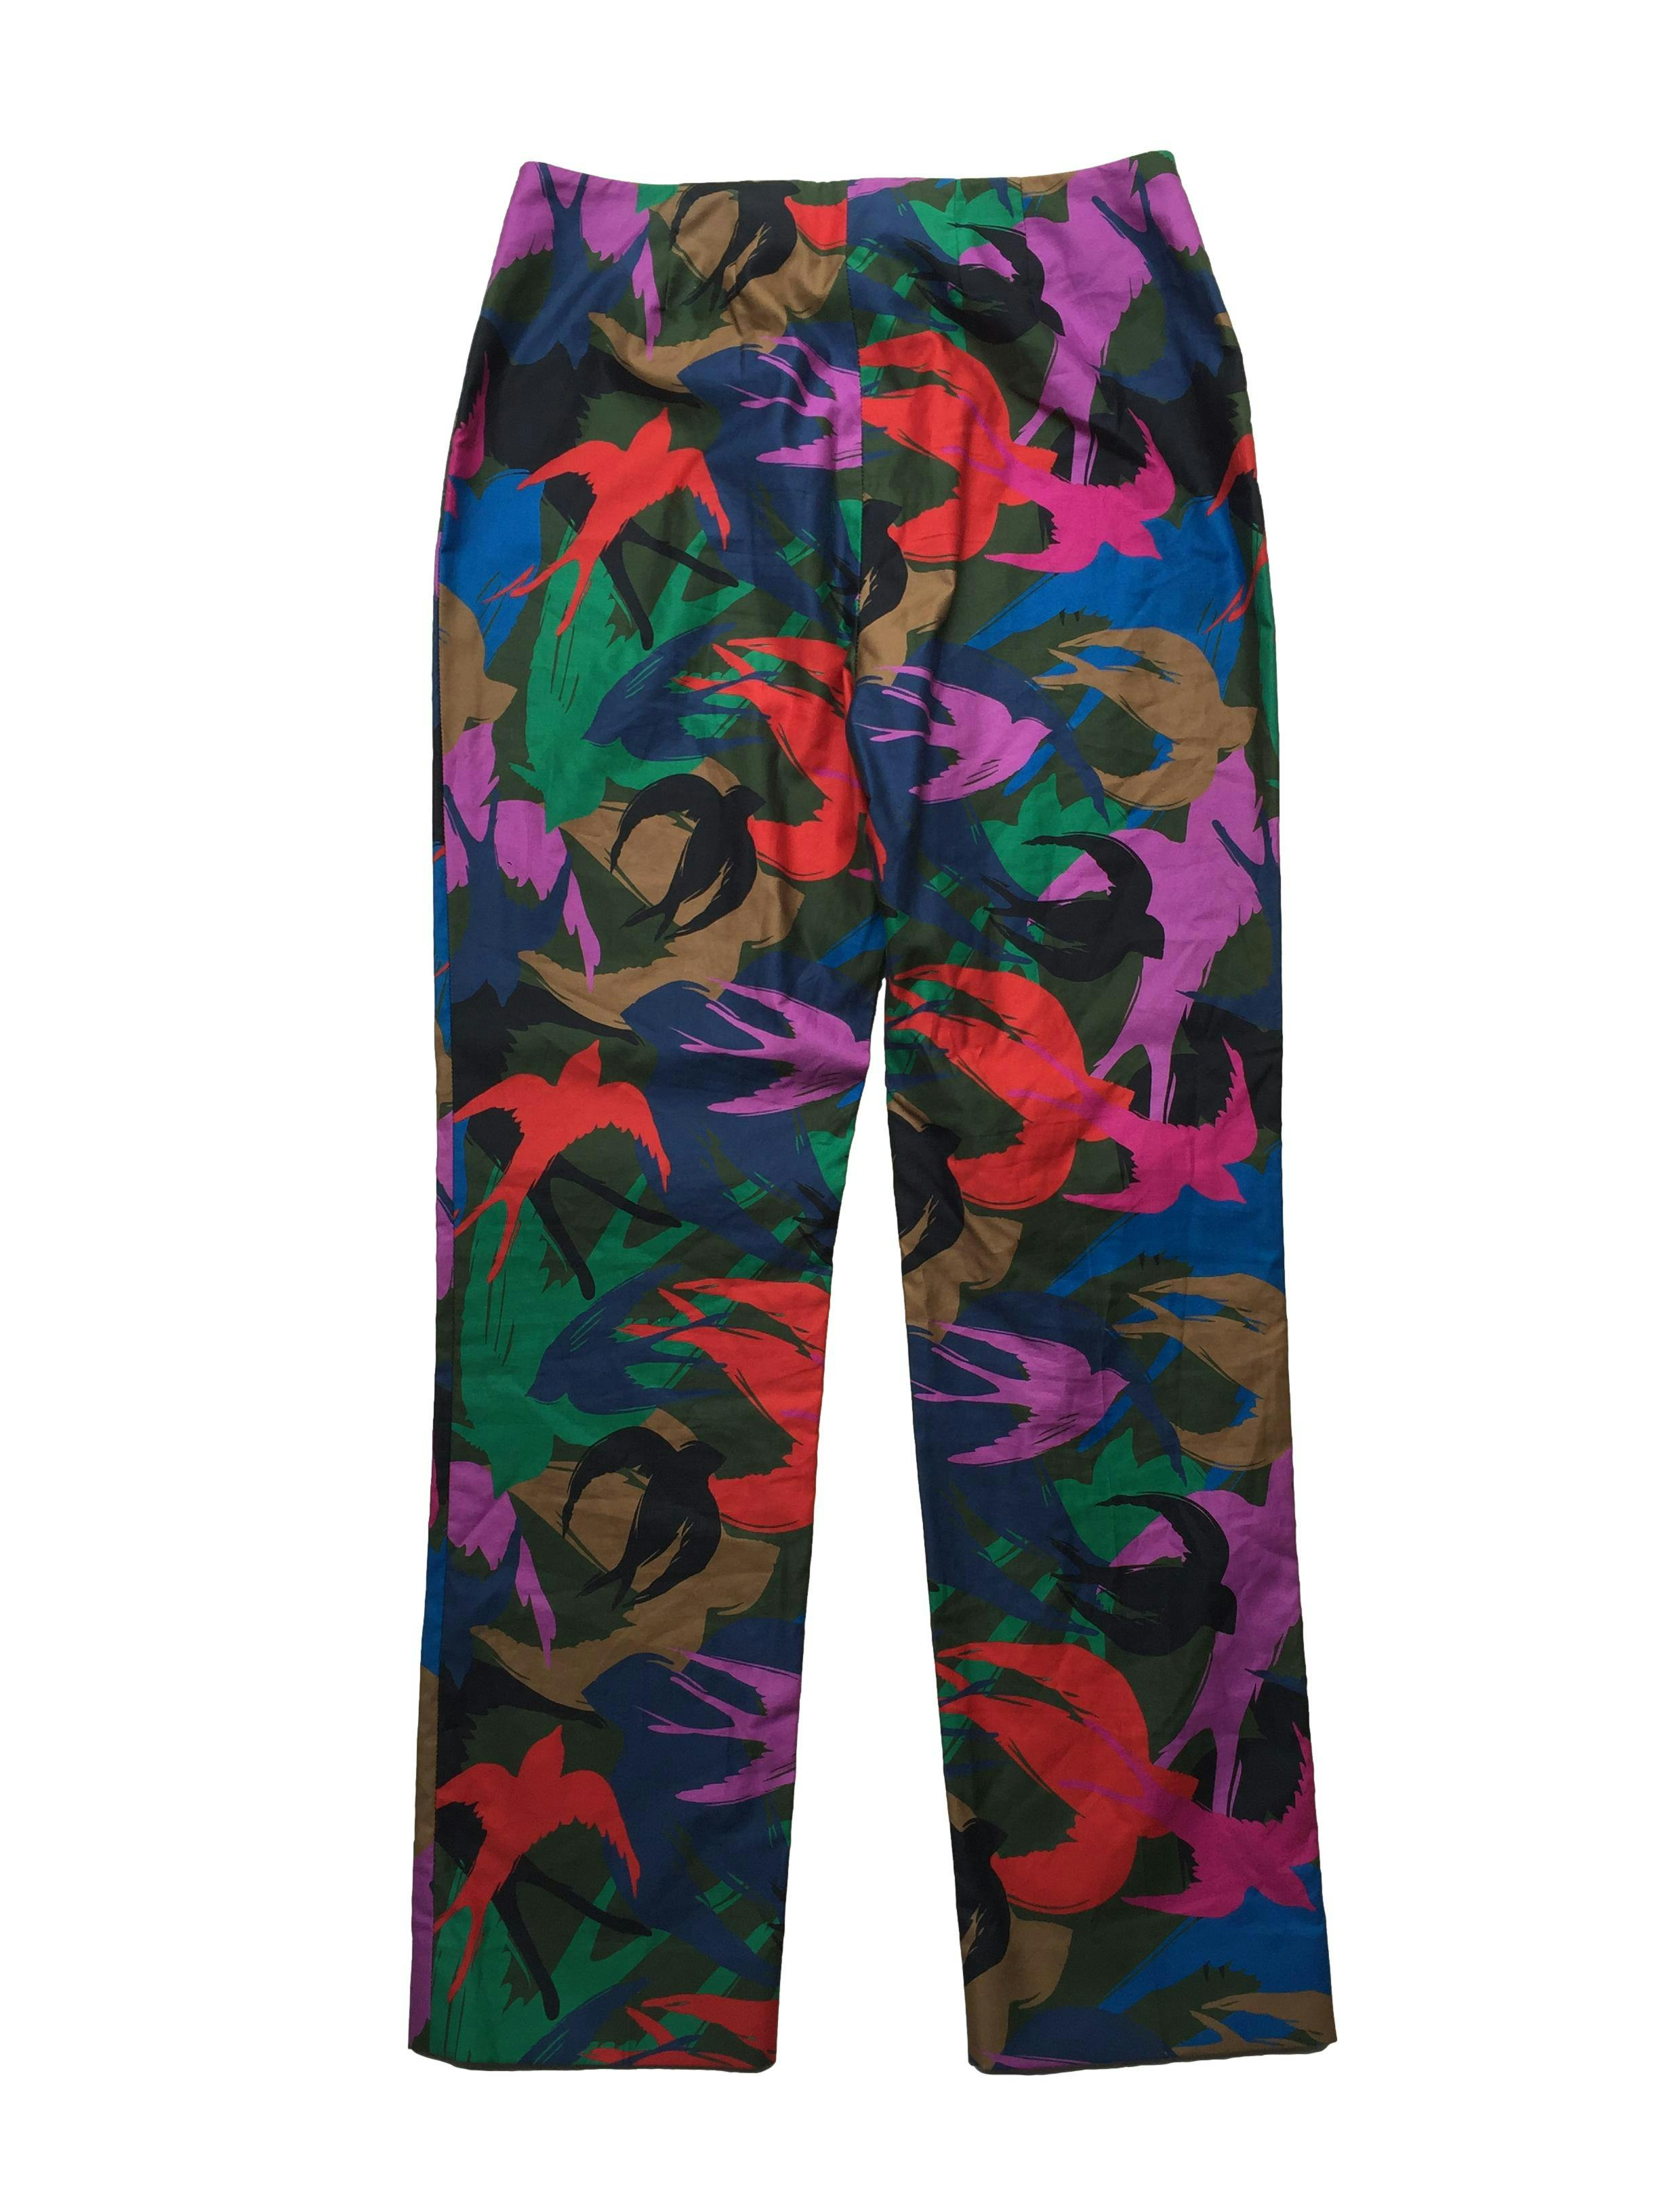 Pantalón Sonia Rykiel slim fit azul con estampado de aves multicolor, tela fresca 100% algodón. Precio original S/600. Cintura 70cm, Largo 93cm.